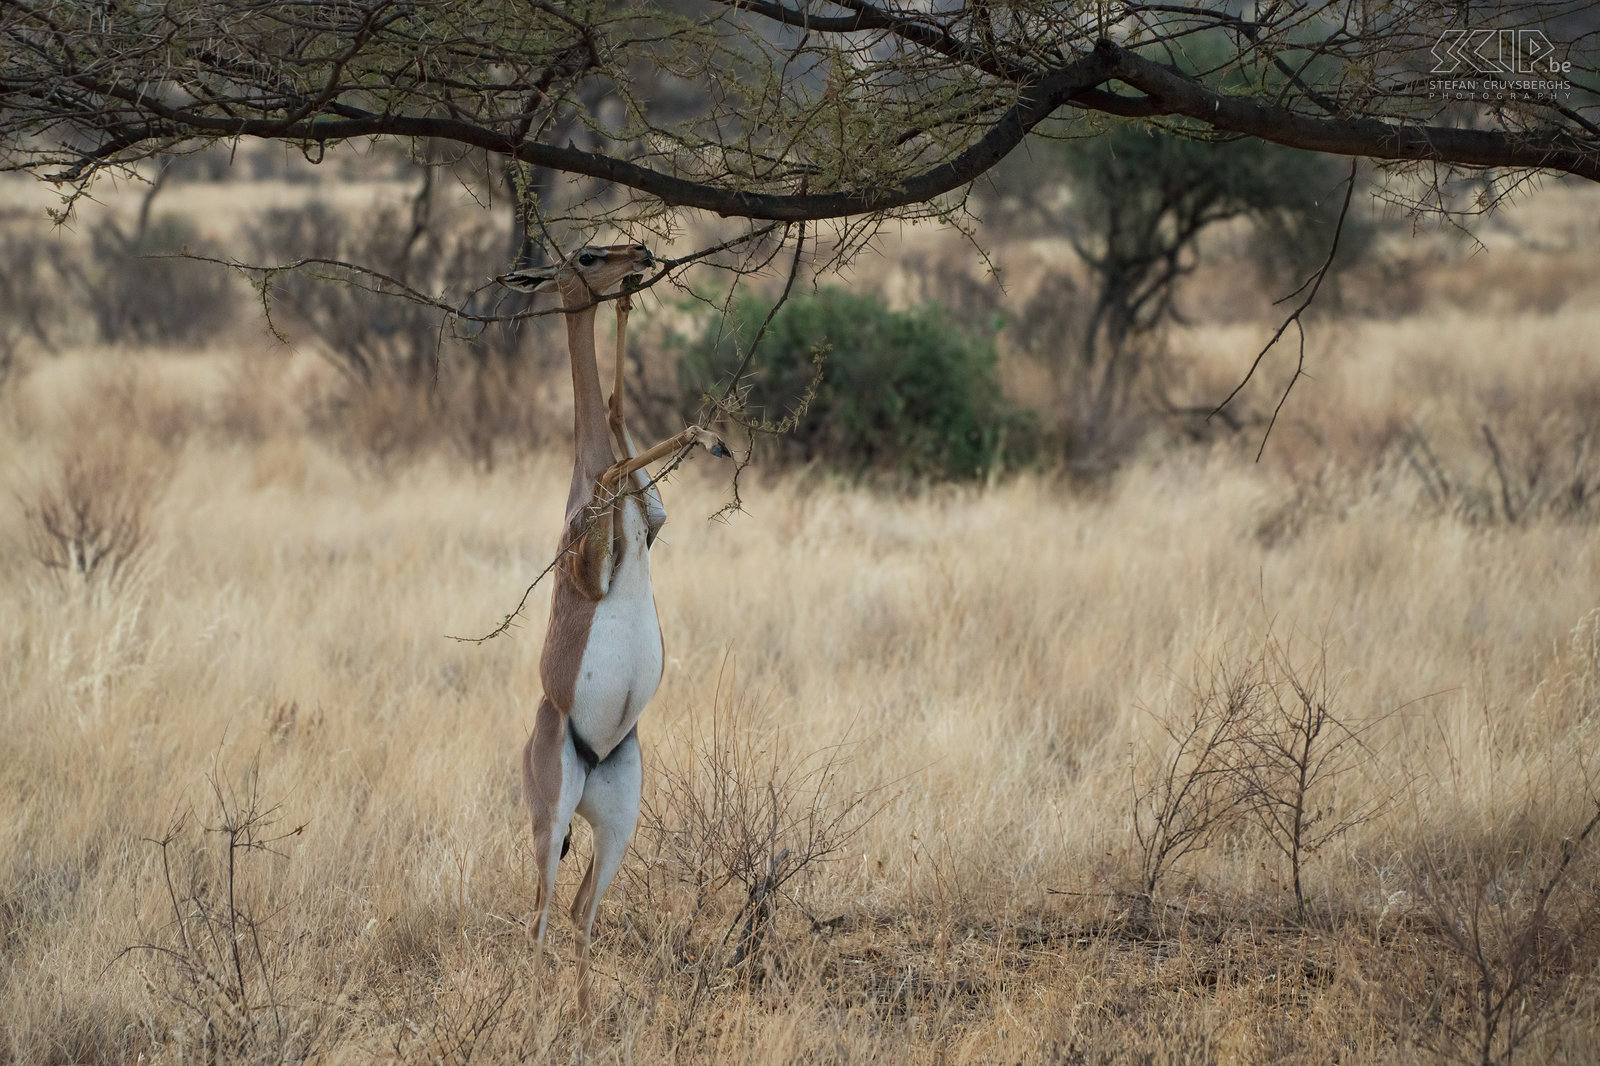 Samburu - Gerenoek De gerenoek of girafgazelle (Gerenuk, Litocranius walleri) is een slanke antilope met een lange nek die blaadjes en takjes eet van droge acacias en doornstruiken. Deze gazelles komen enkel voor in het noorden van Kenia. Stefan Cruysberghs